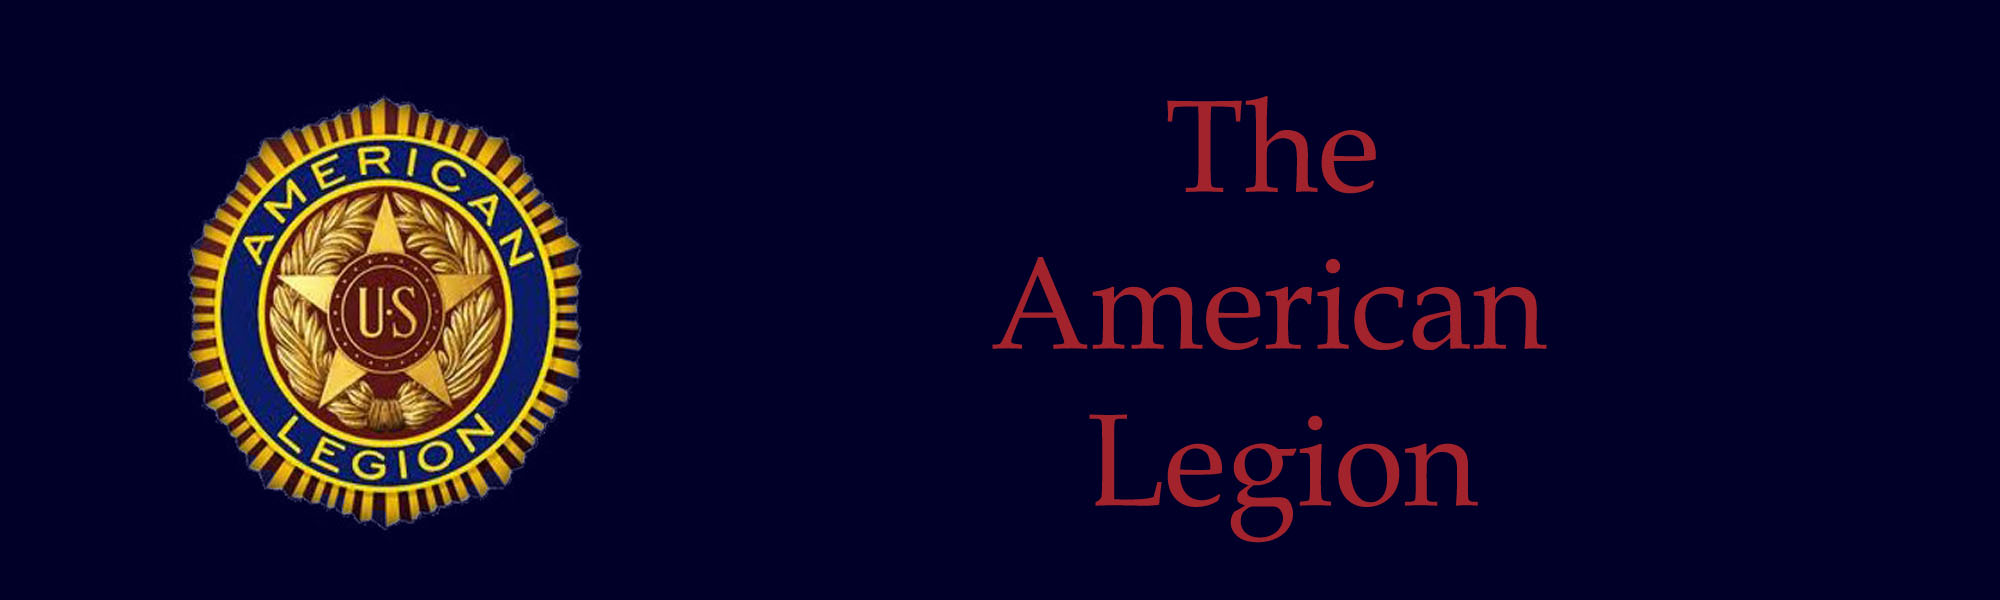 American Legion LOGO